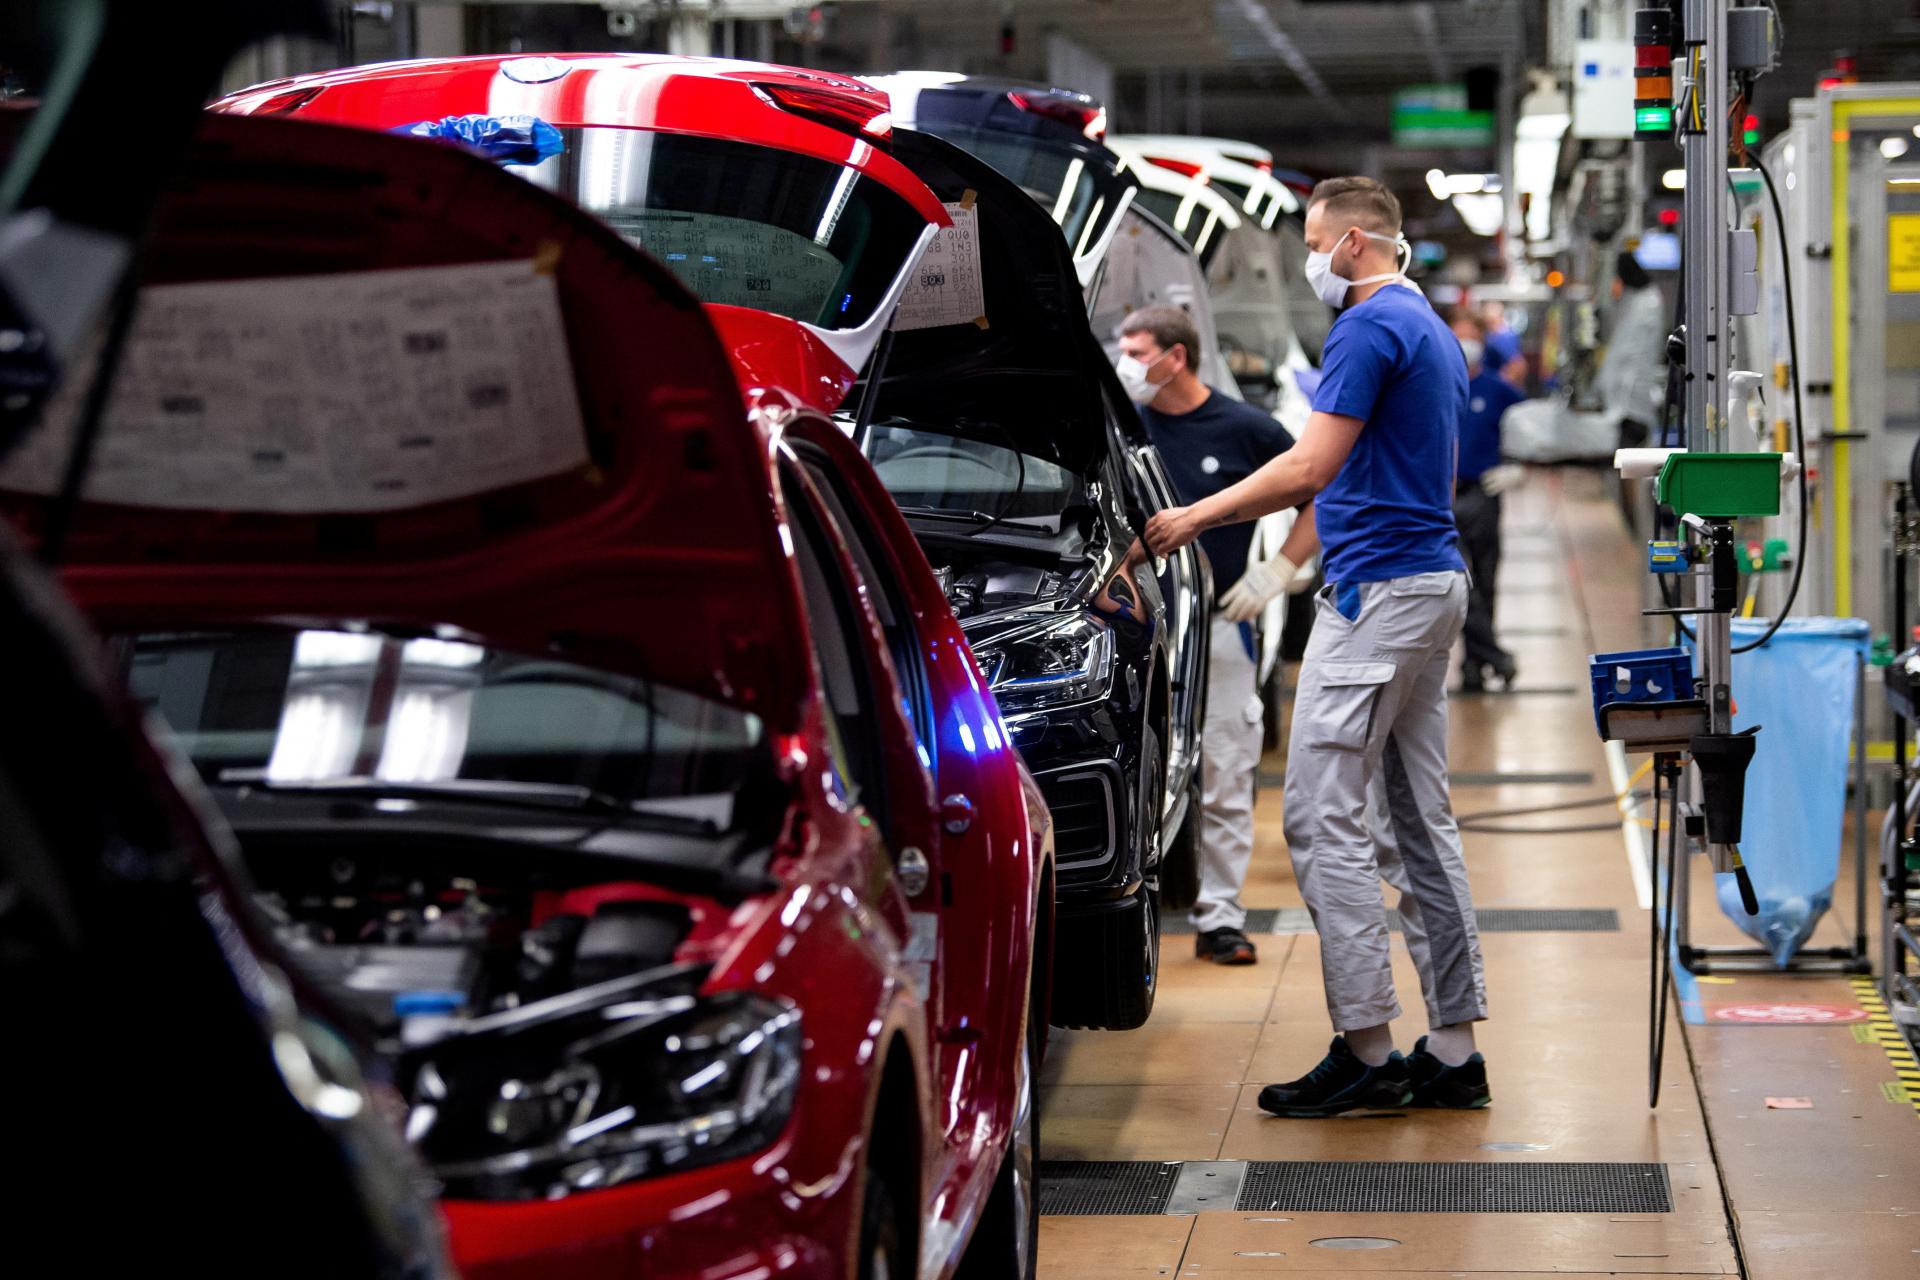 Nemecký priemysel klesol štvrtý mesiac po sebe, zachraňovali ho automobilky